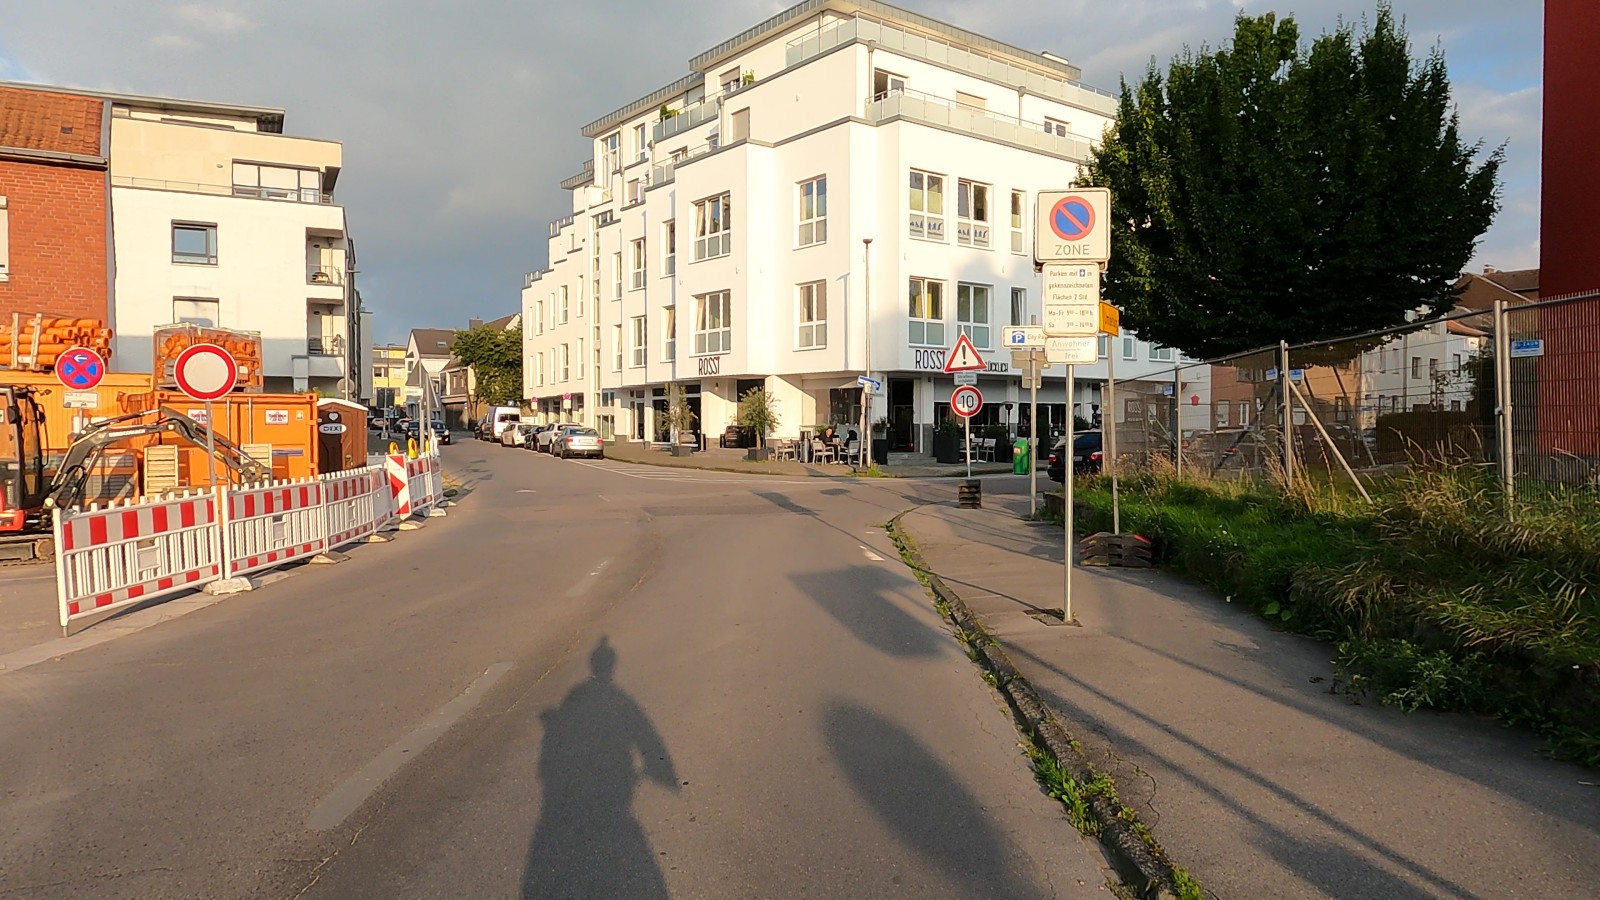 Bild: Kreuzung Lehnstraße mit der Bahnhofstraße: links wird schon gebaut, rechts darf Radverkehr gegen die Fahrtrichtung fahren, ohne dass es erkennbar ist